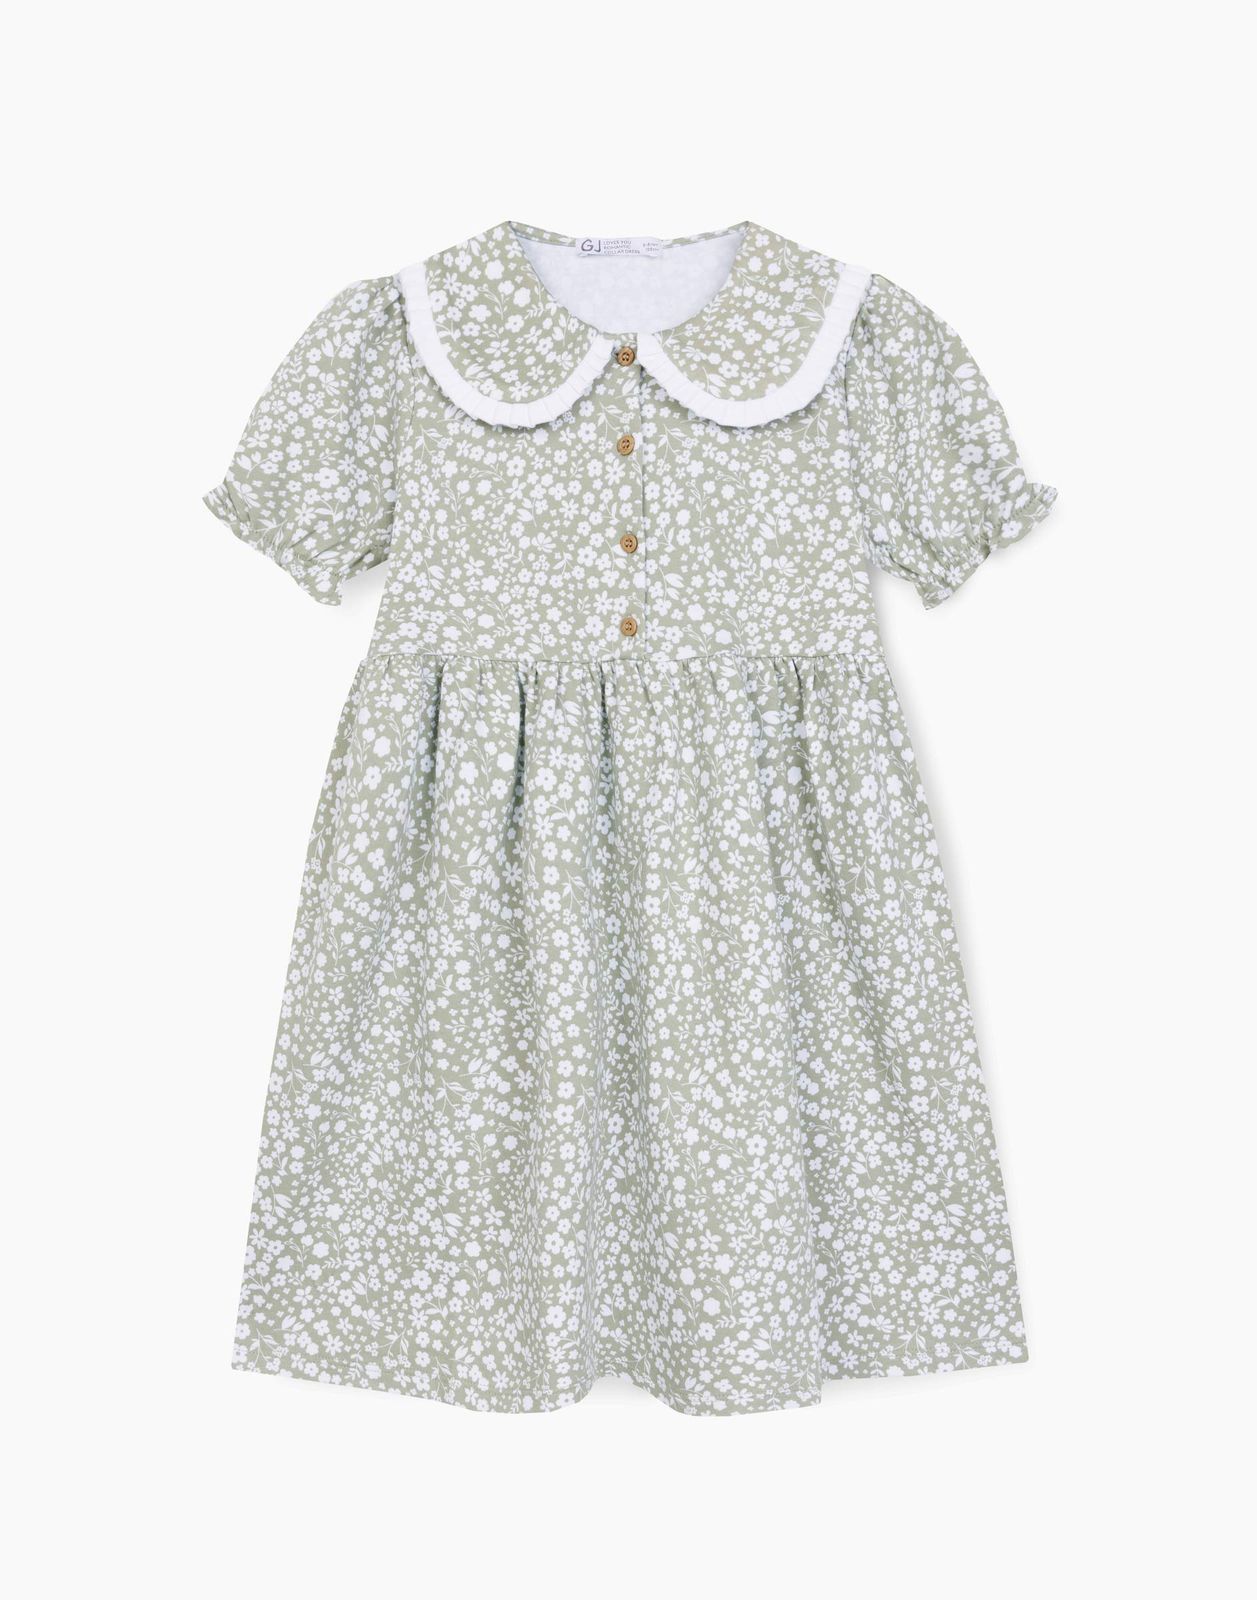 Платье детское Gloria Jeans GDR028132, оливковый/разноцветный, 122